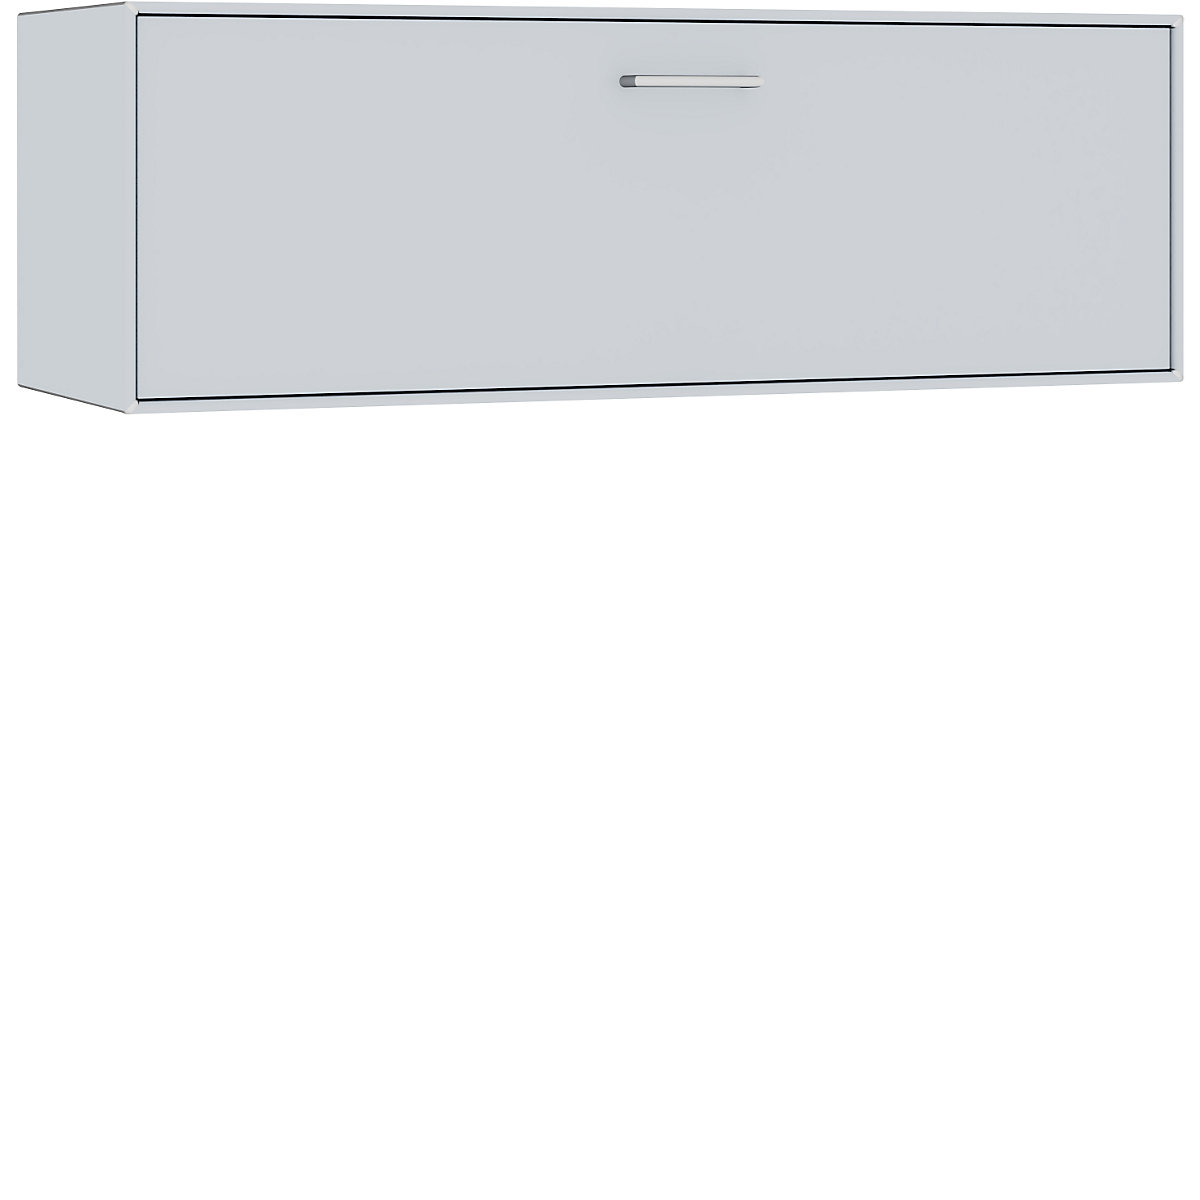 Compartimento individual, para colgar – mauser, 1 cajón, anchura 1155 mm, aluminio blanco-6